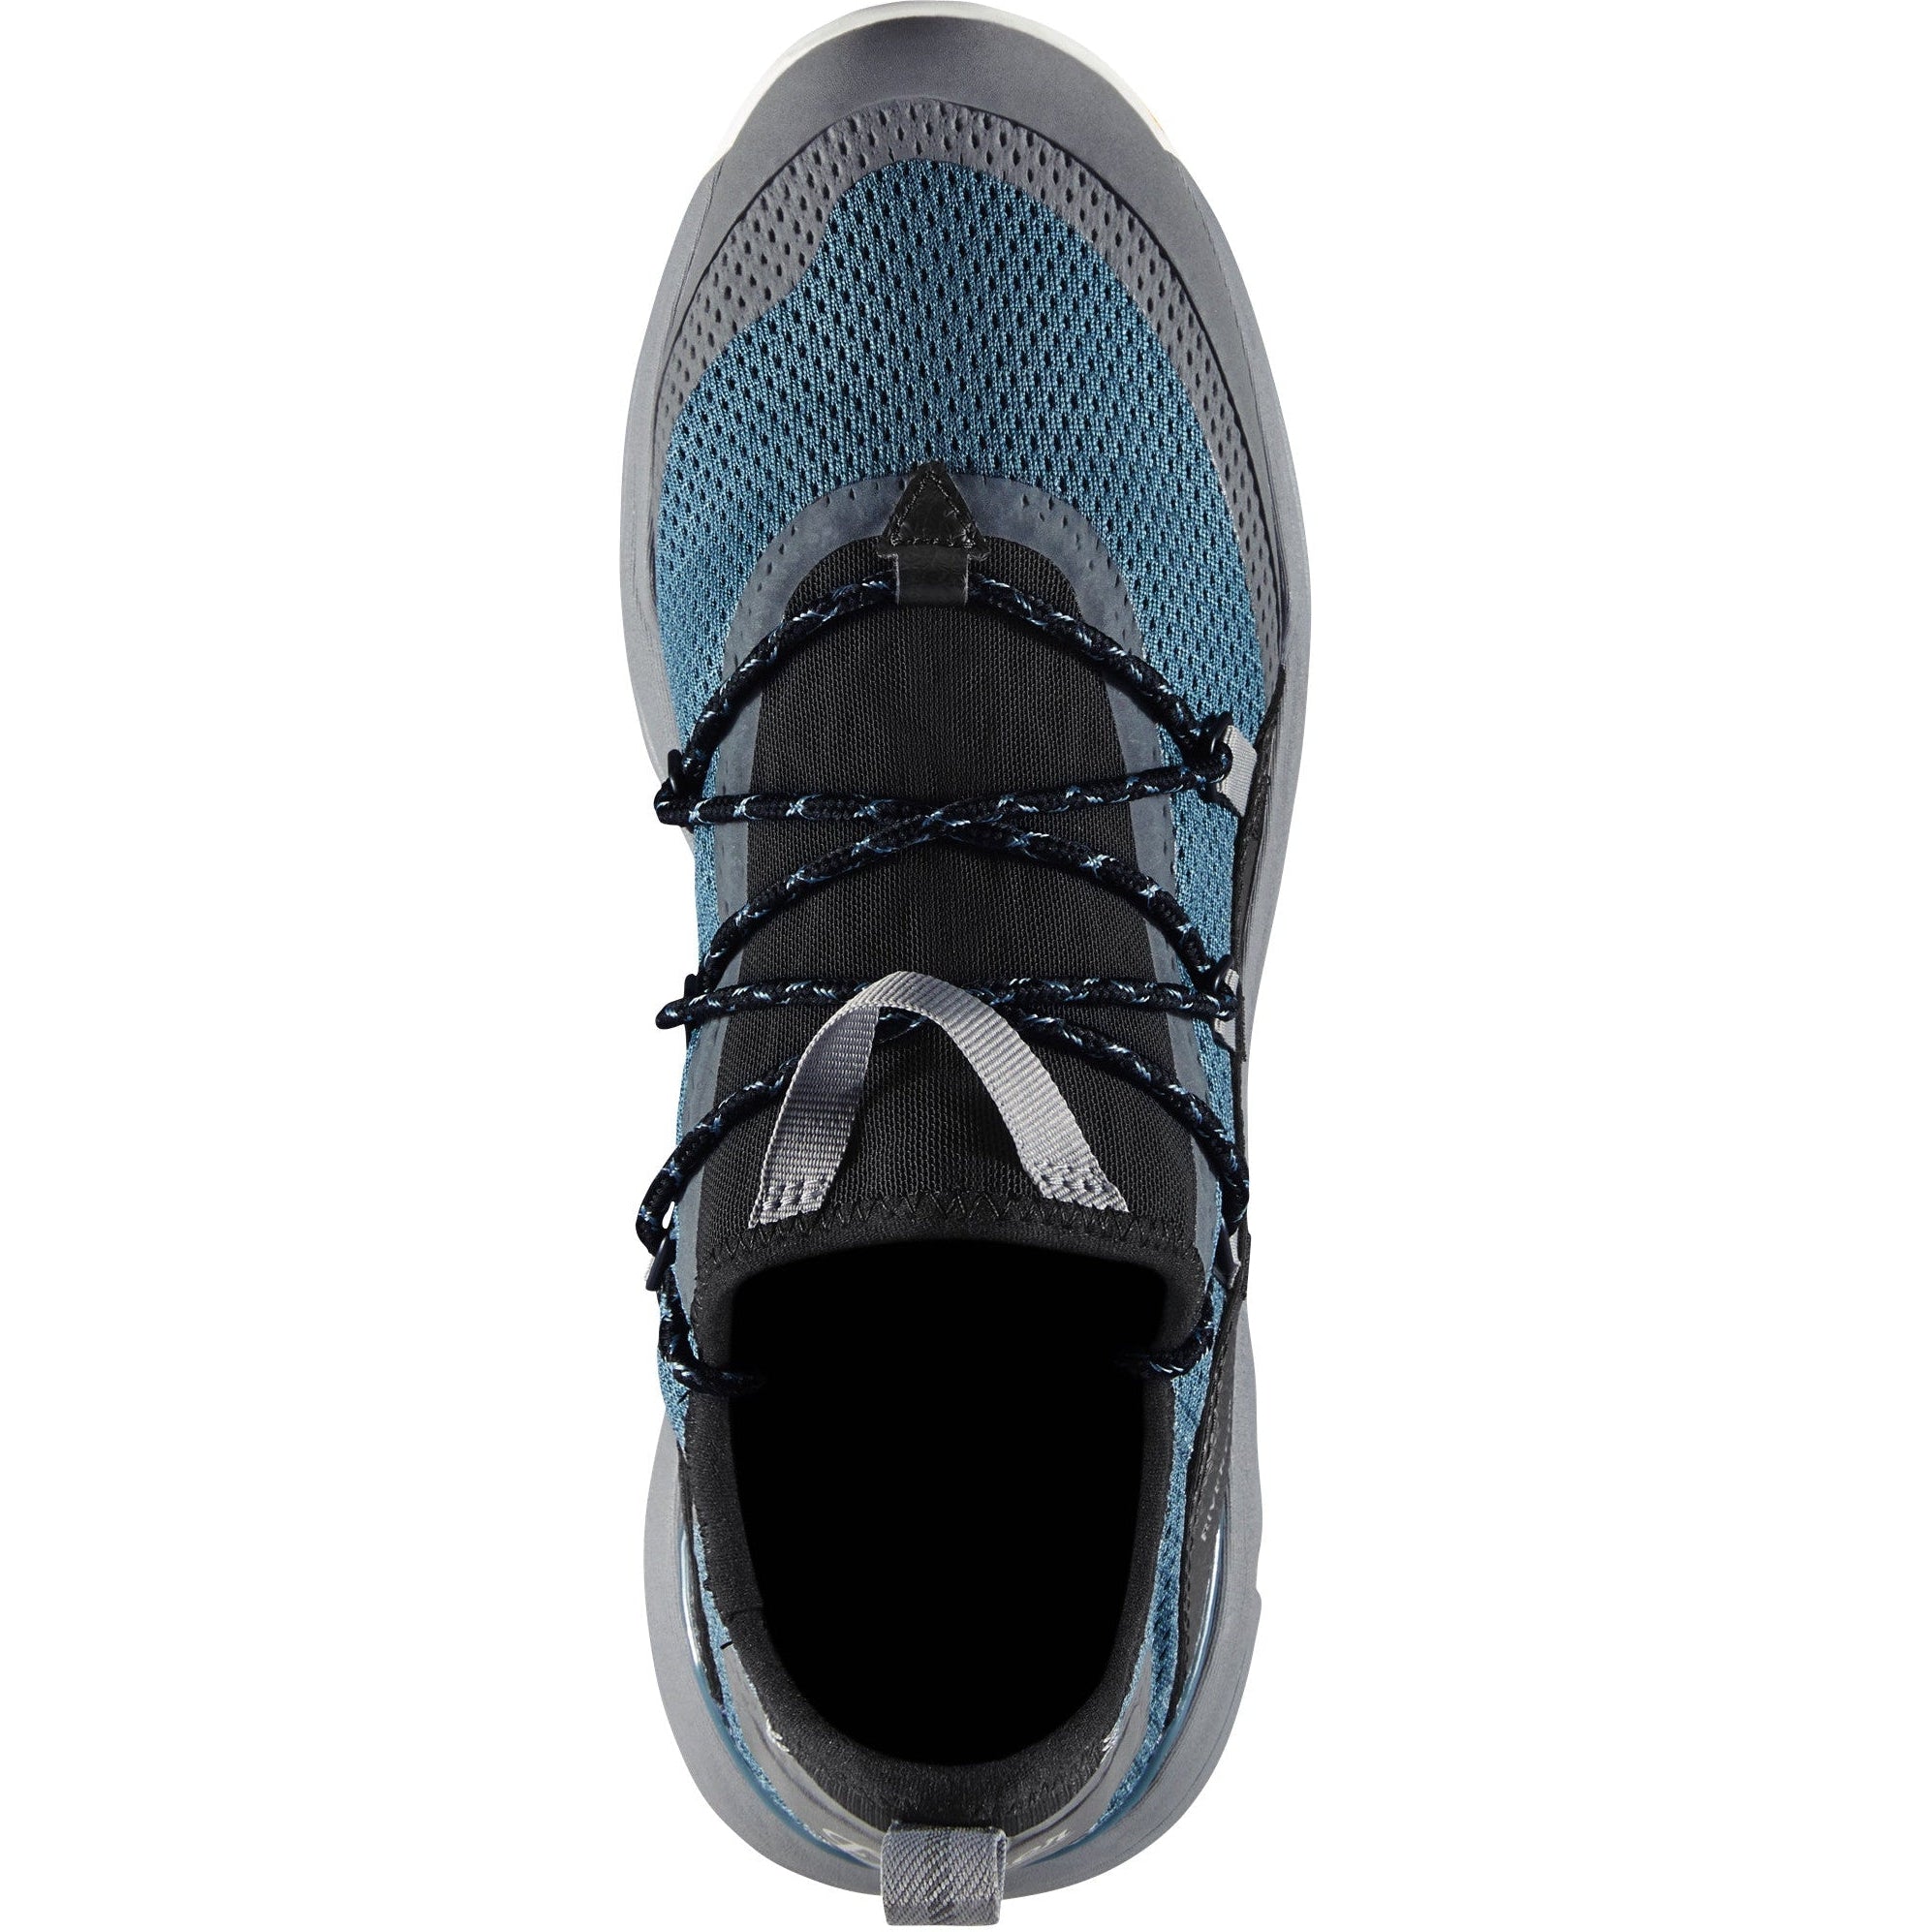 Danner Men's Rivercomber 3" Hiking Shoe - Goblin Blue - 63300  - Overlook Boots